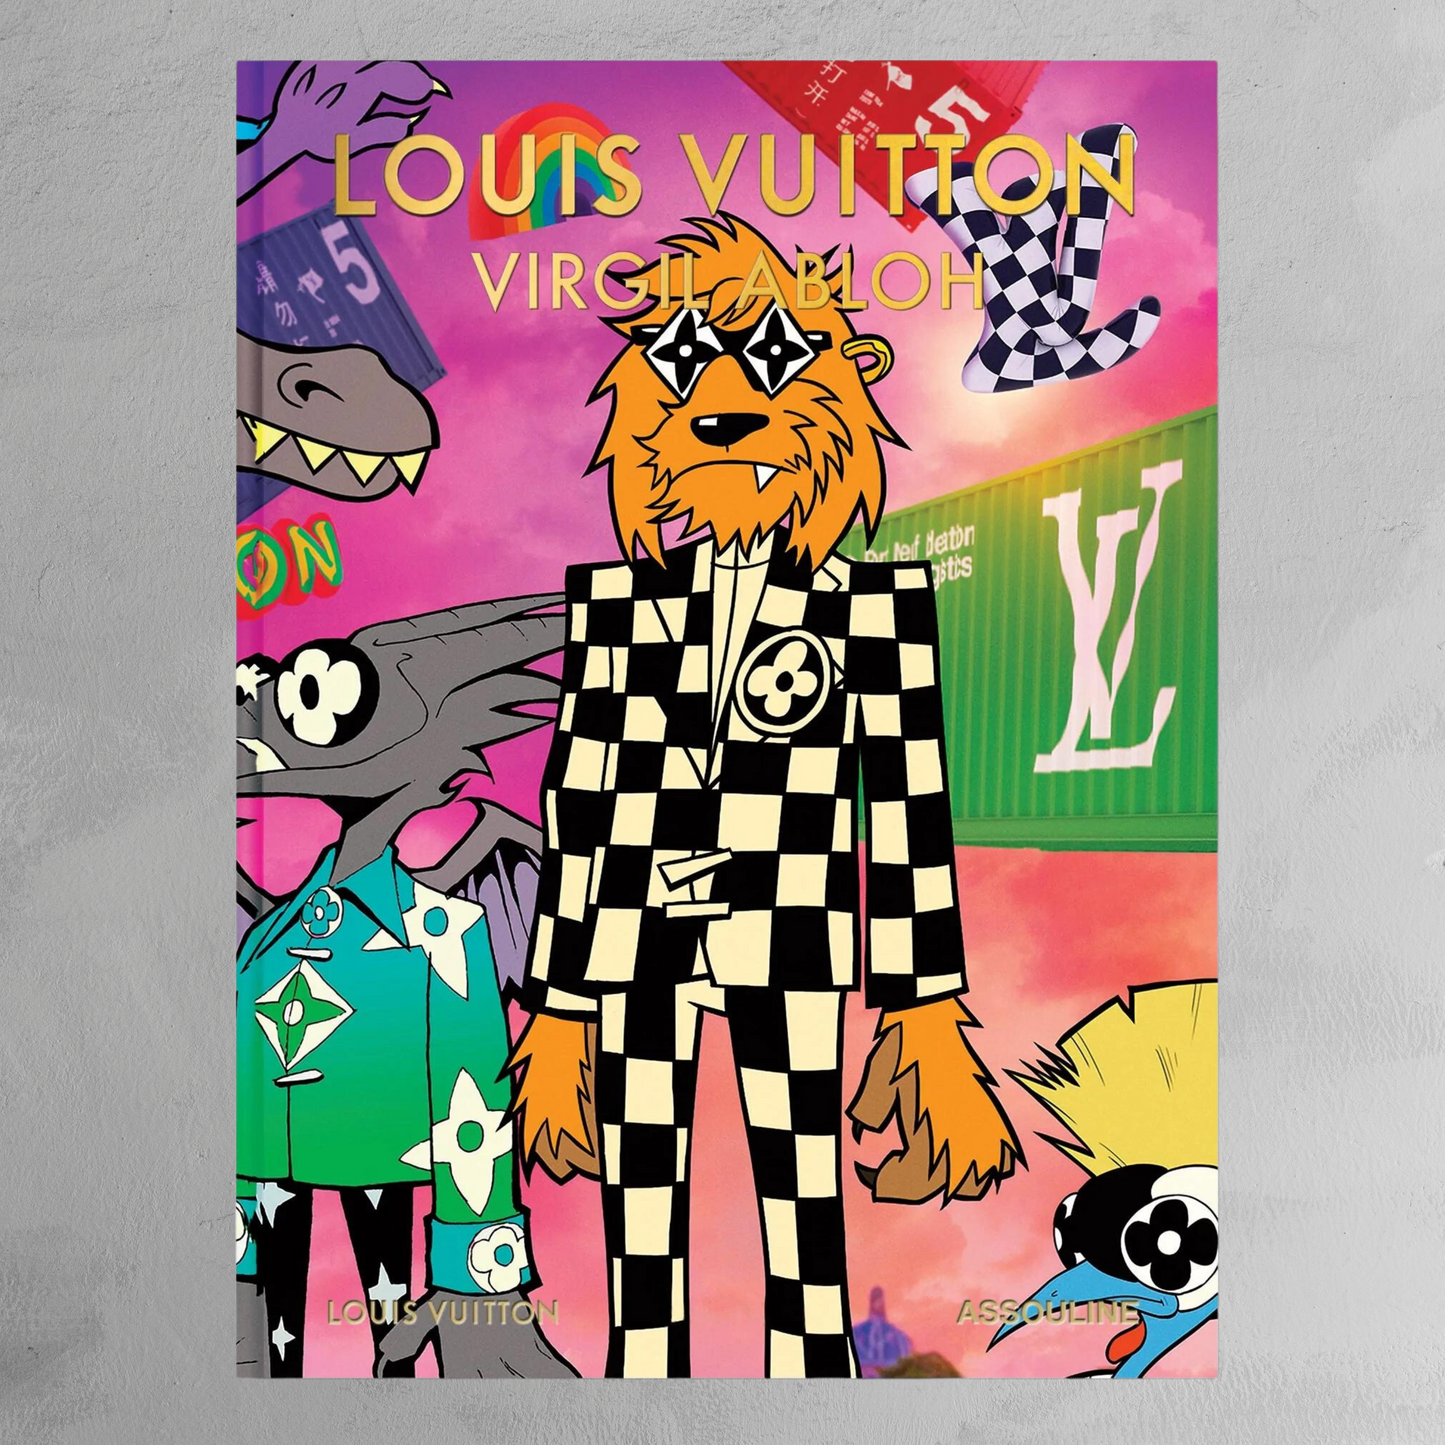 copy of Assouline Book Louis Vuitton Virgil Abloh Cartoon Cover